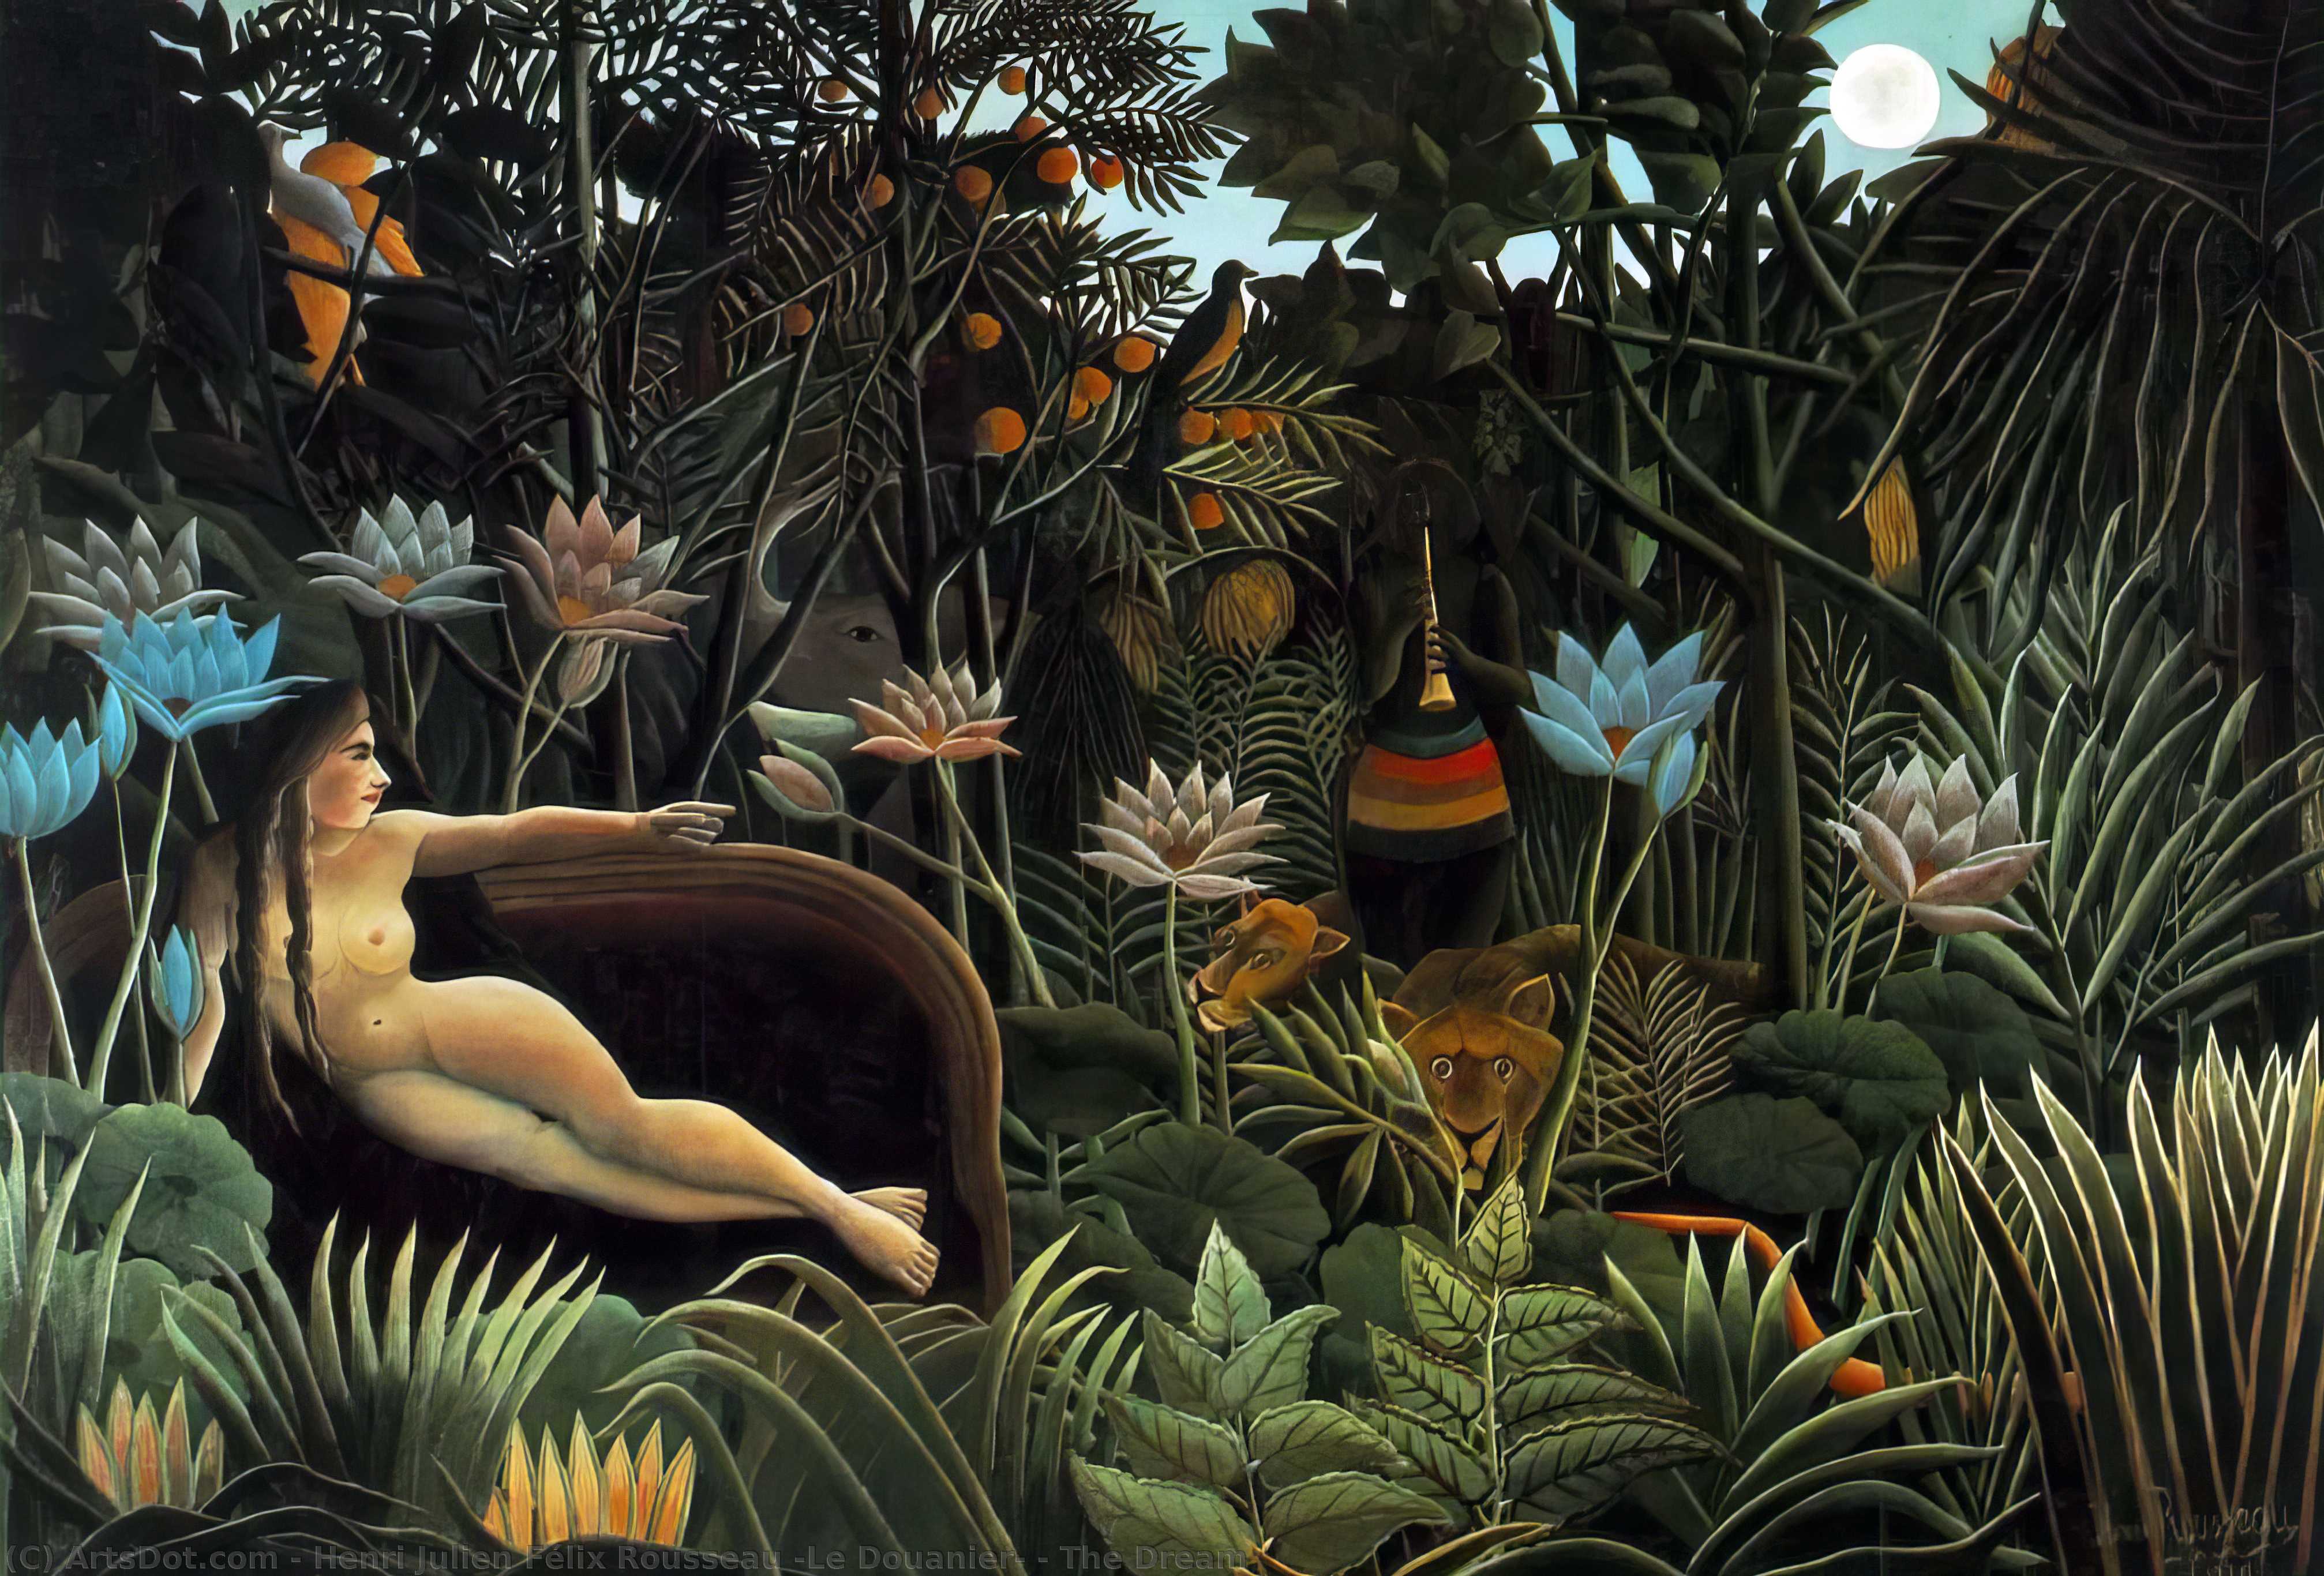 Wikioo.org - Bách khoa toàn thư về mỹ thuật - Vẽ tranh, Tác phẩm nghệ thuật Henri Julien Félix Rousseau (Le Douanier) - The Dream